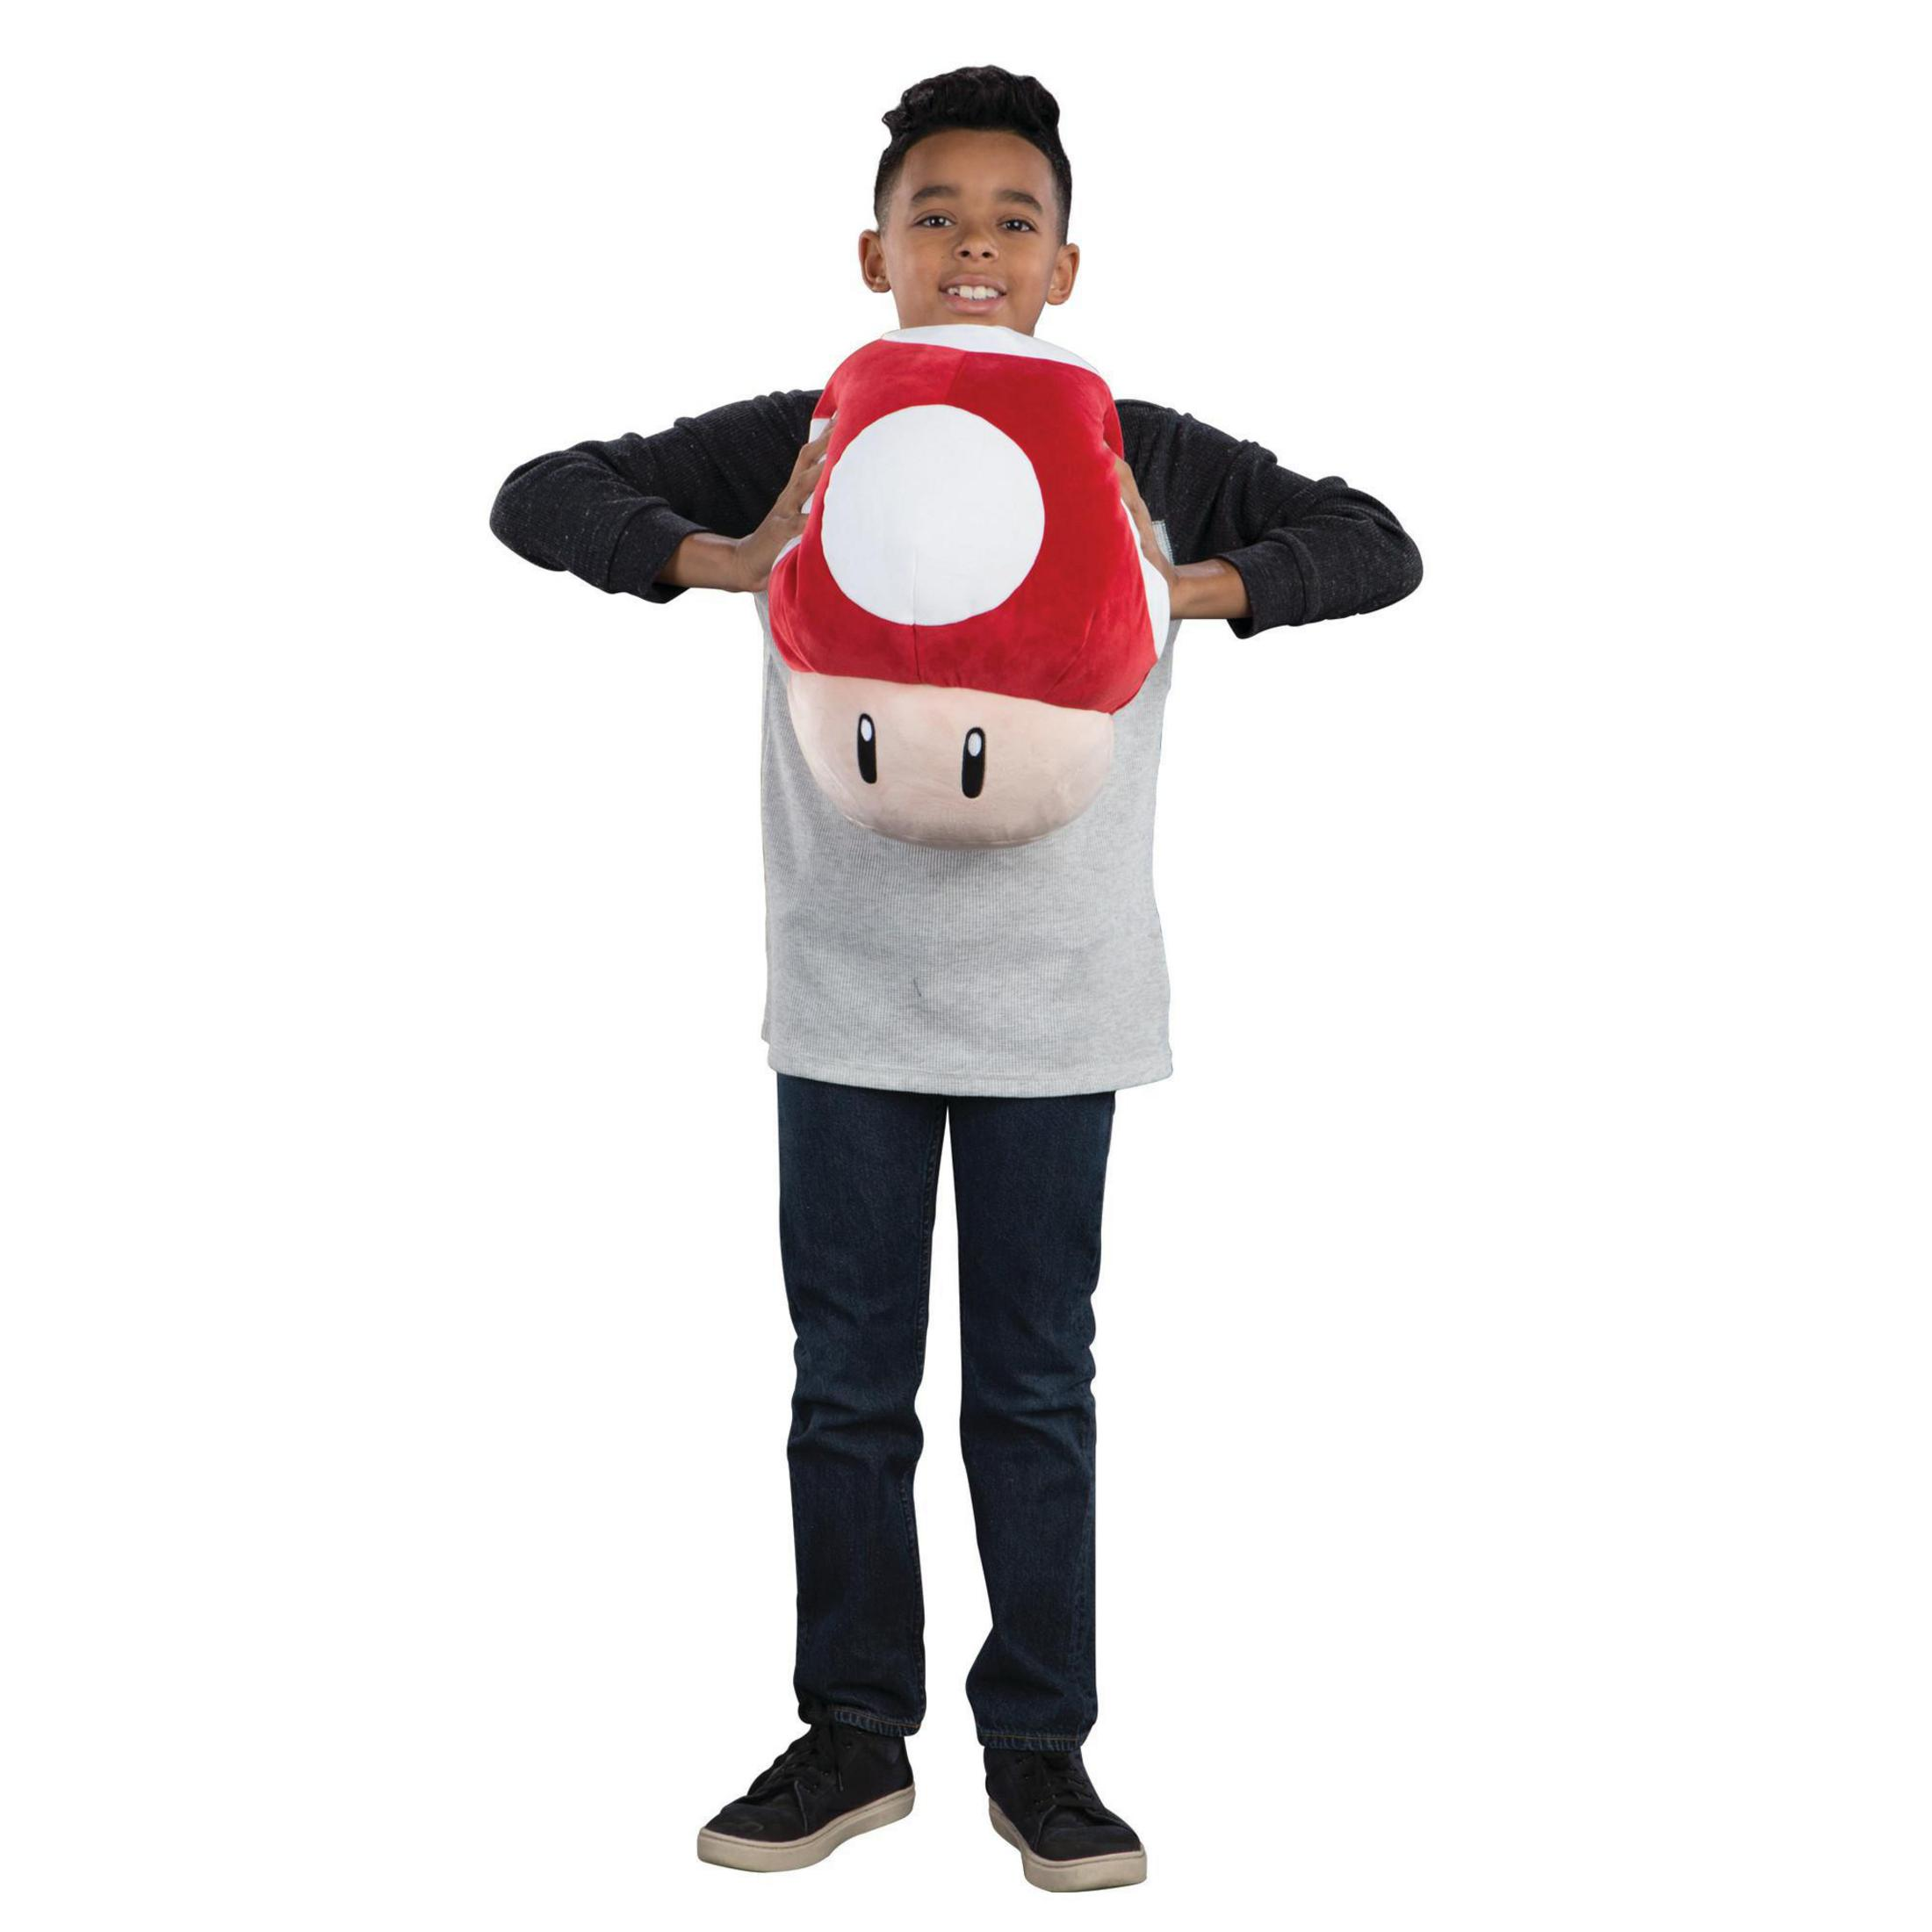 Super Mario - Mocchi-Mocchi - Red Mushroom Plüschfigur